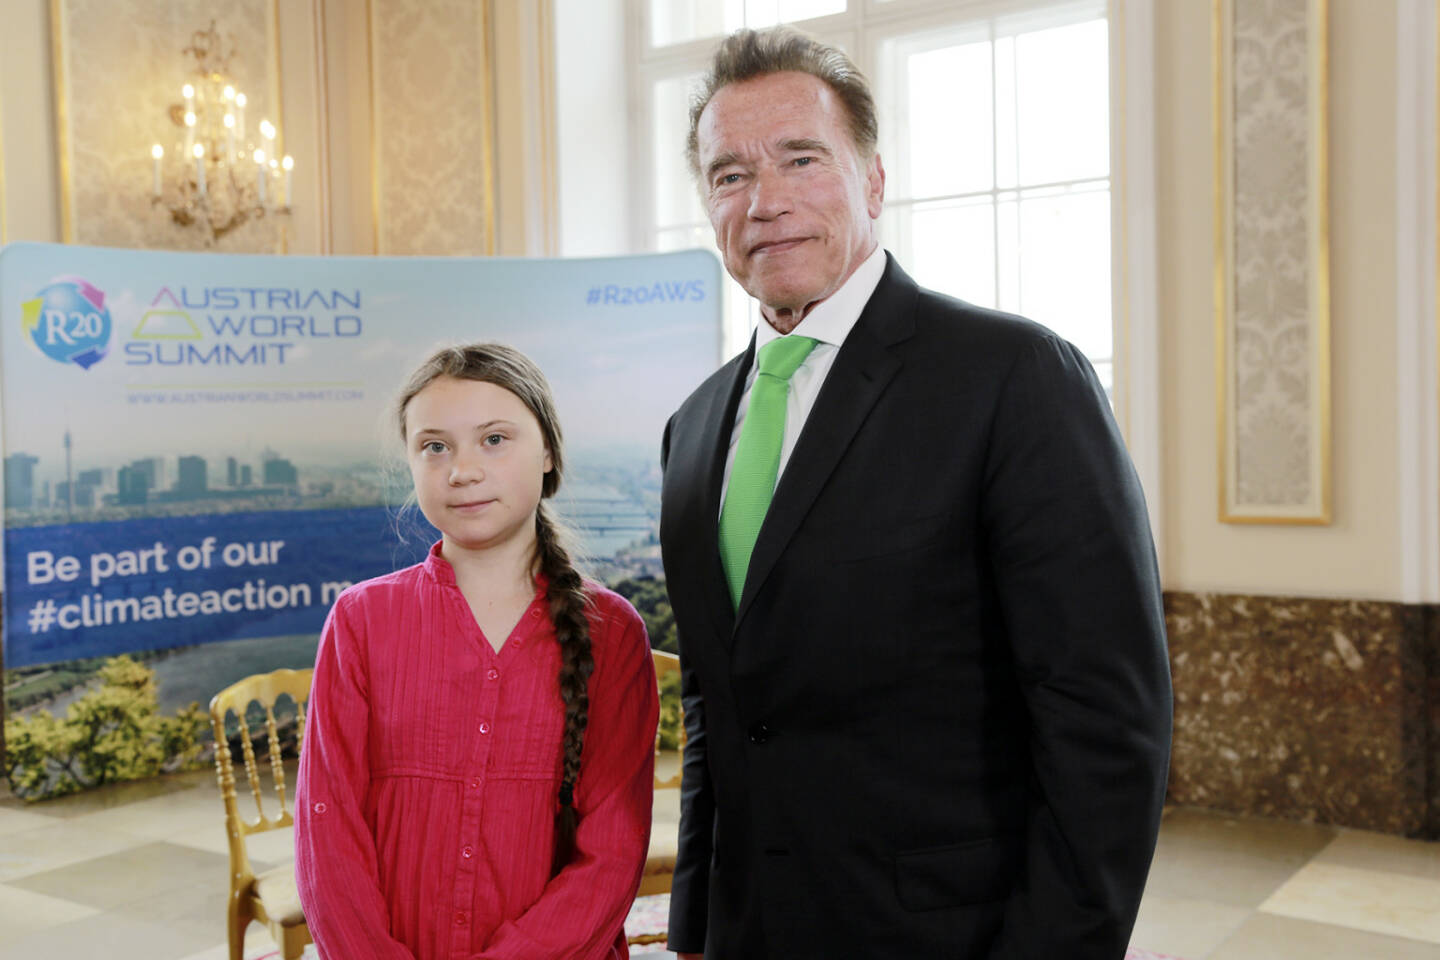 R20 AUSTRIAN WORLD SUMMIT 2019: Zusammentreffen zweier Kämpfer für den Klimaschutz: Arnold Schwarzenegger forderte „Lösungen anstelle von Bullshit“. Auch Klimaaktivistin Greta Thunberg wurde deutlich: „Wir müssen es beim Namen nennen: Es ist ein Notfall!“ Fotocredit: R20AWS/Martin Hesz